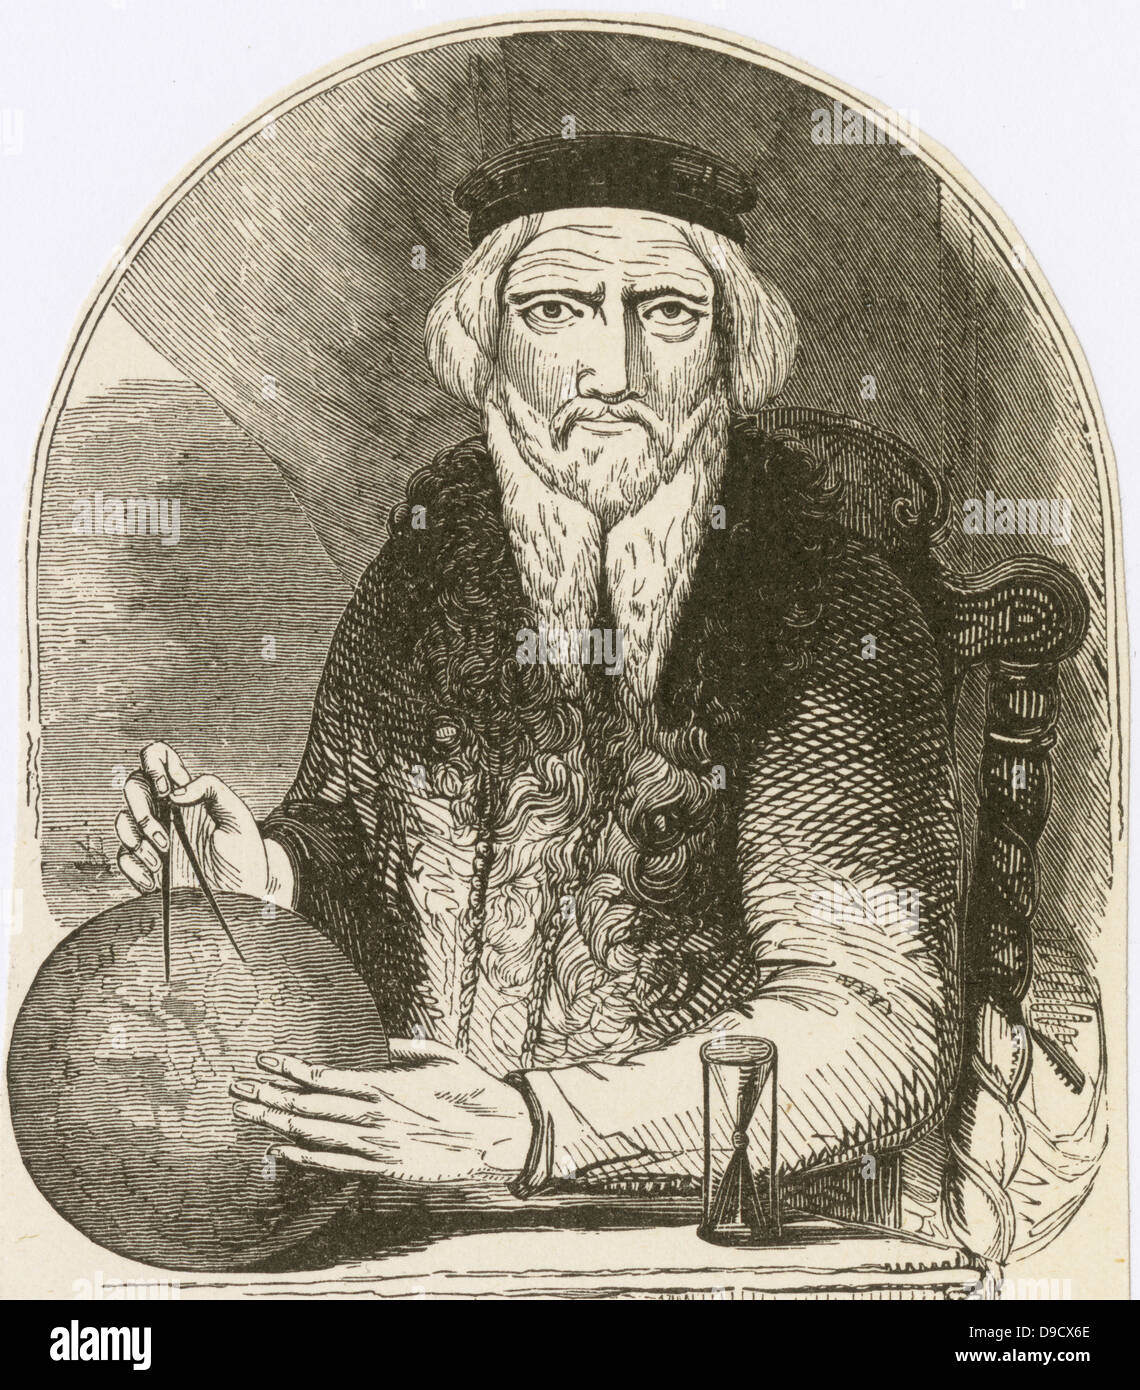 Sébastien Cabot (c1474-c1557) navigateur et cartographe vénitien, fils de John Cabot. Banque D'Images